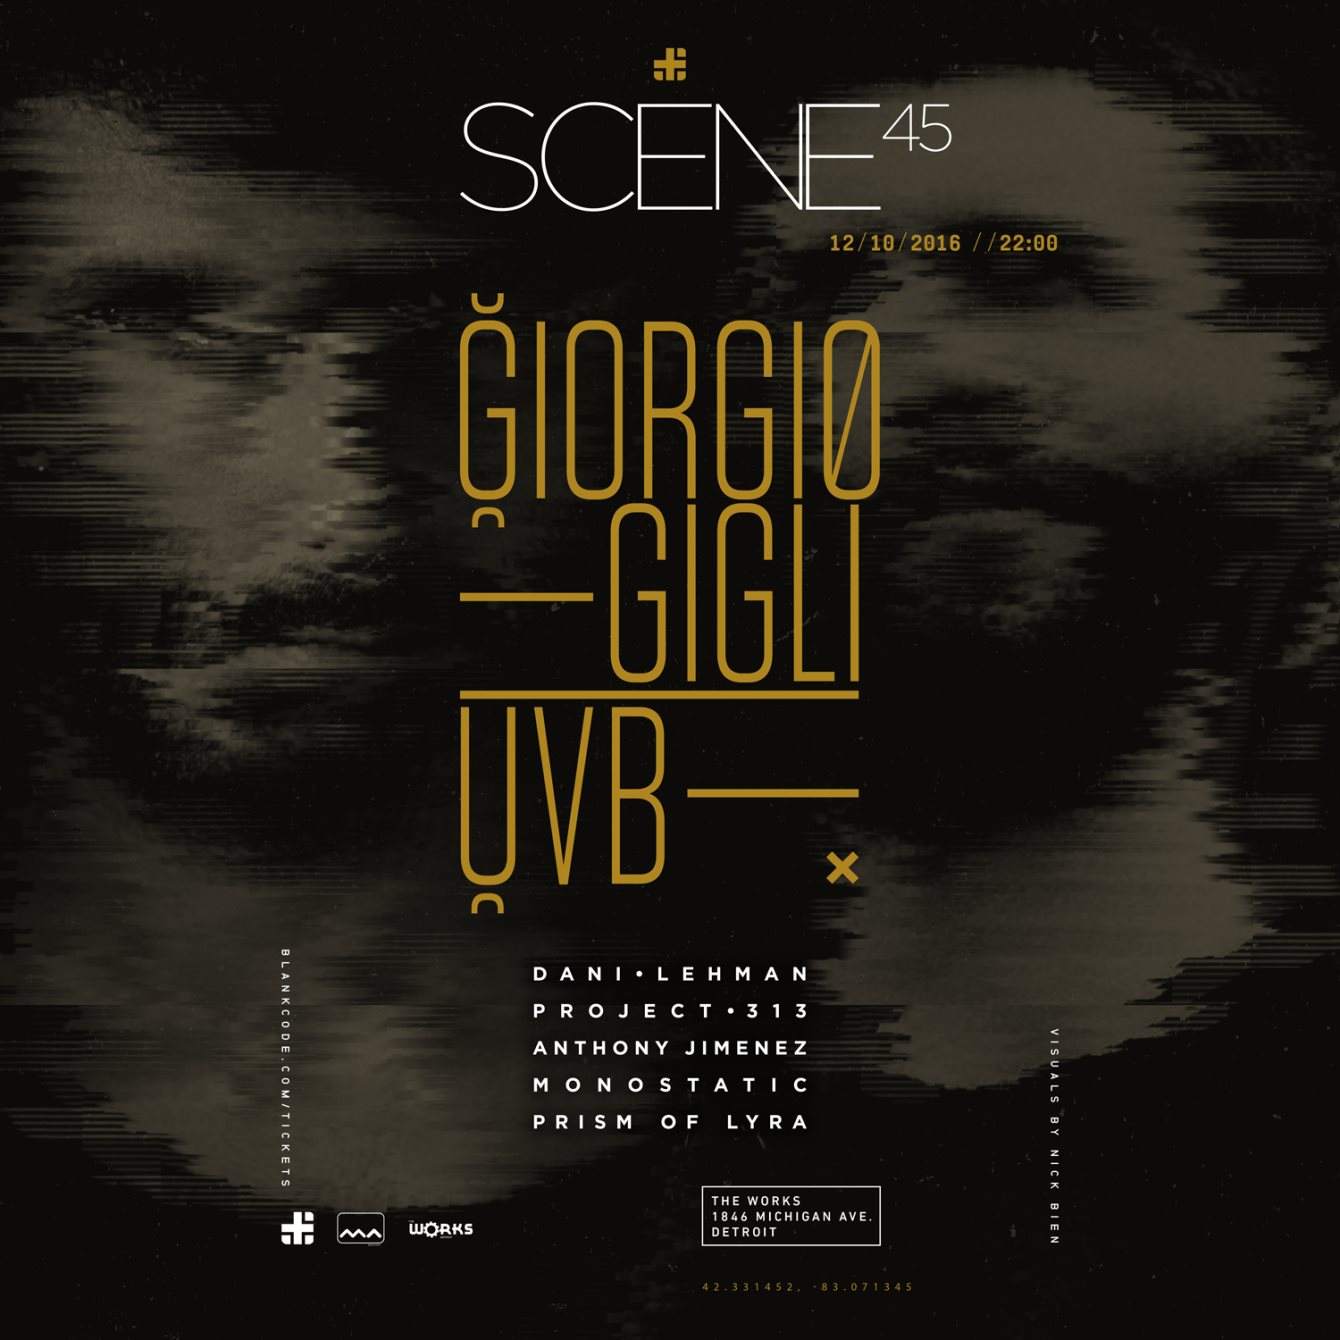 Scene 45 with Giorgio Gigli & UVB - フライヤー表